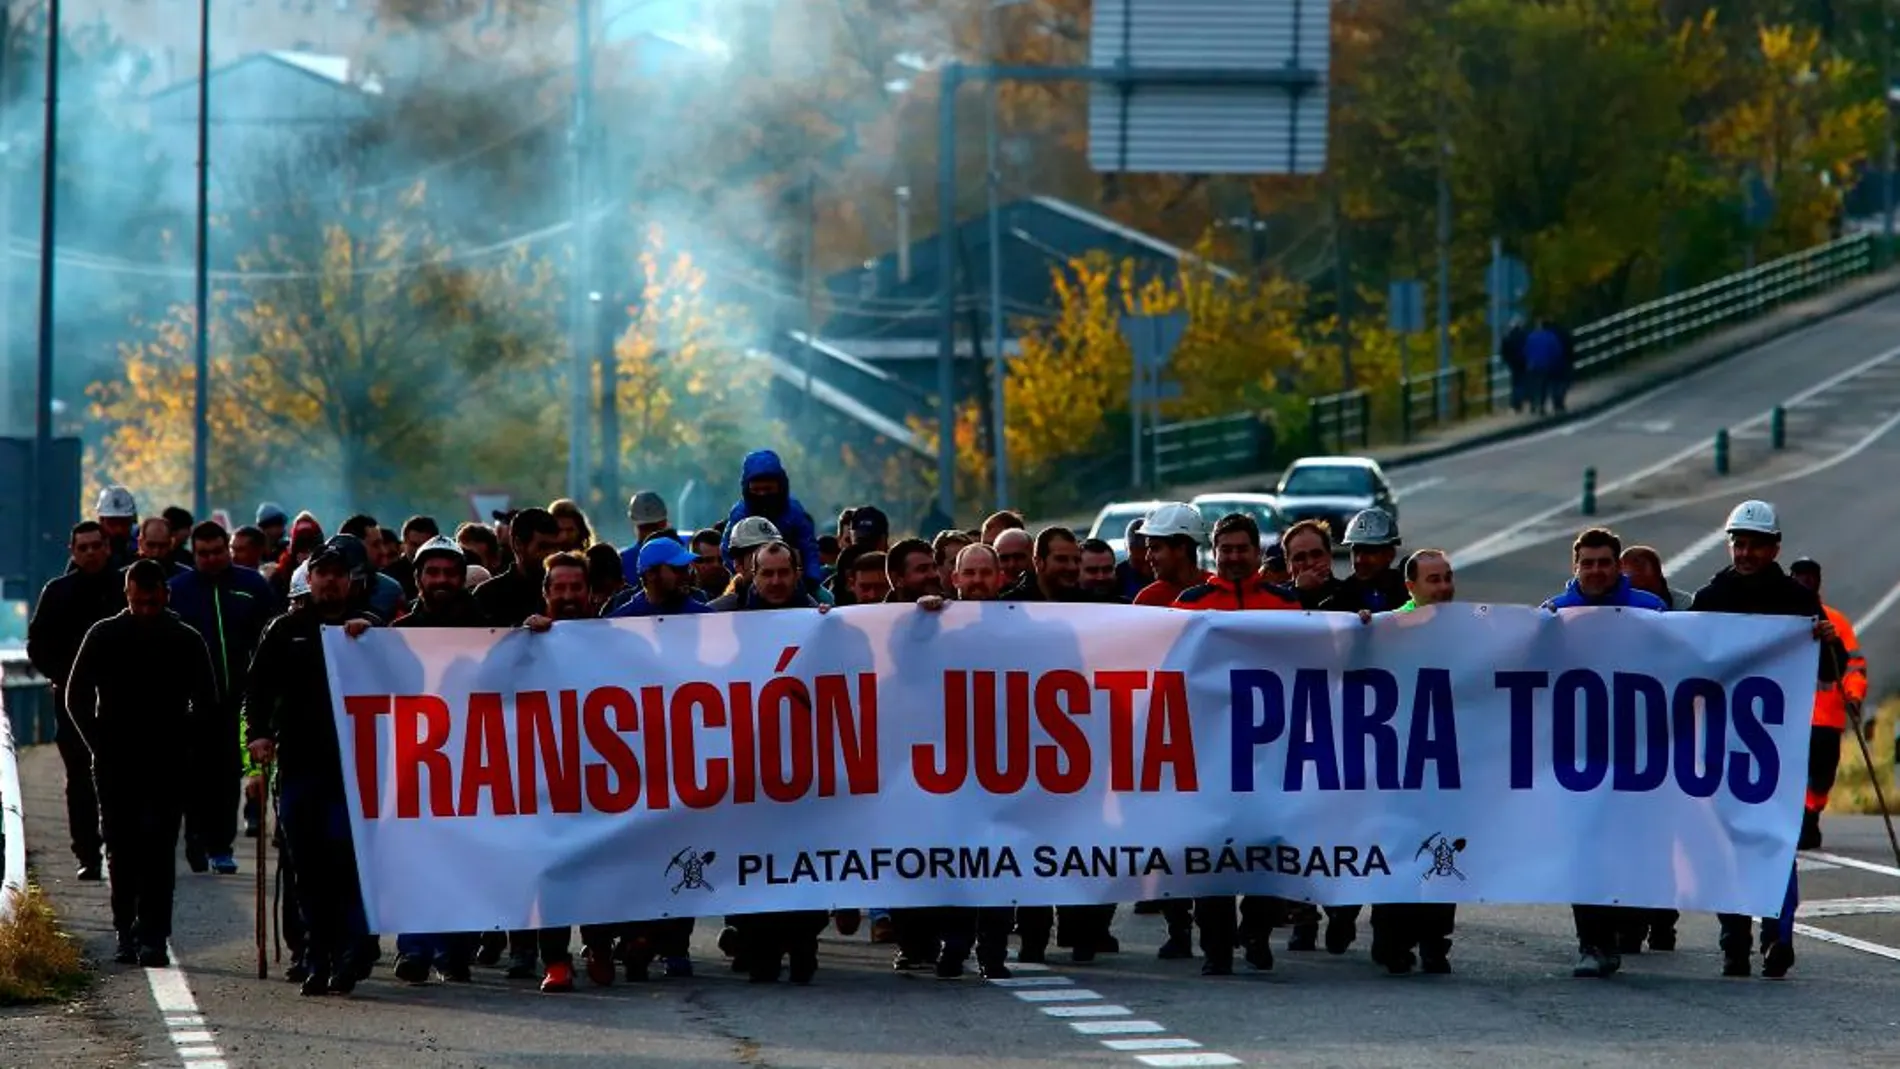 Inicio de la primera etapa de la marcha minera que sale de Toreno con destino a Oviedo de la plataforma Santa Bárbara, que agrupa a los trabajadores de contratas, subcontratas y empresas privadas del sector del carbón